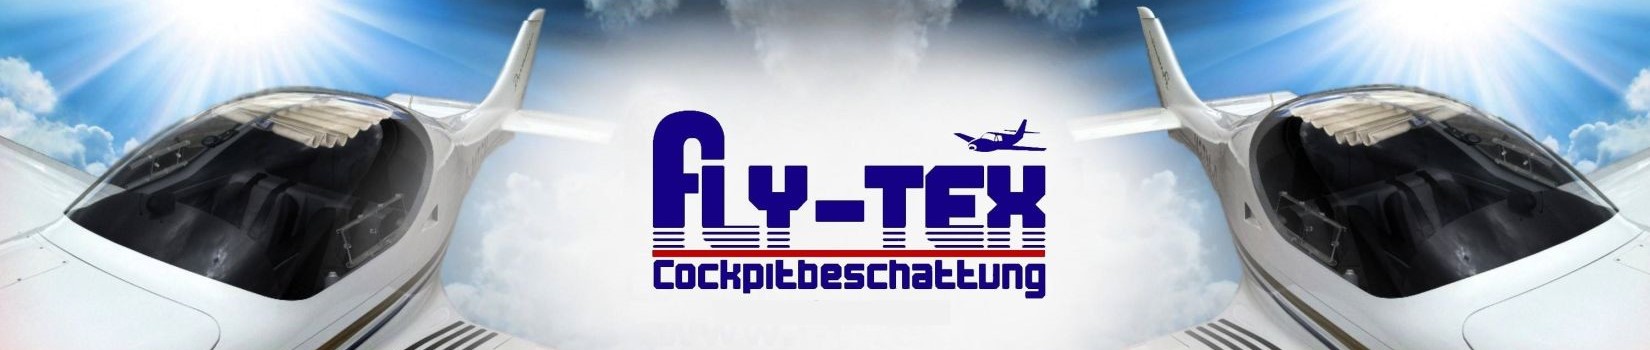 Fly-Tex Cockpitbeschattung